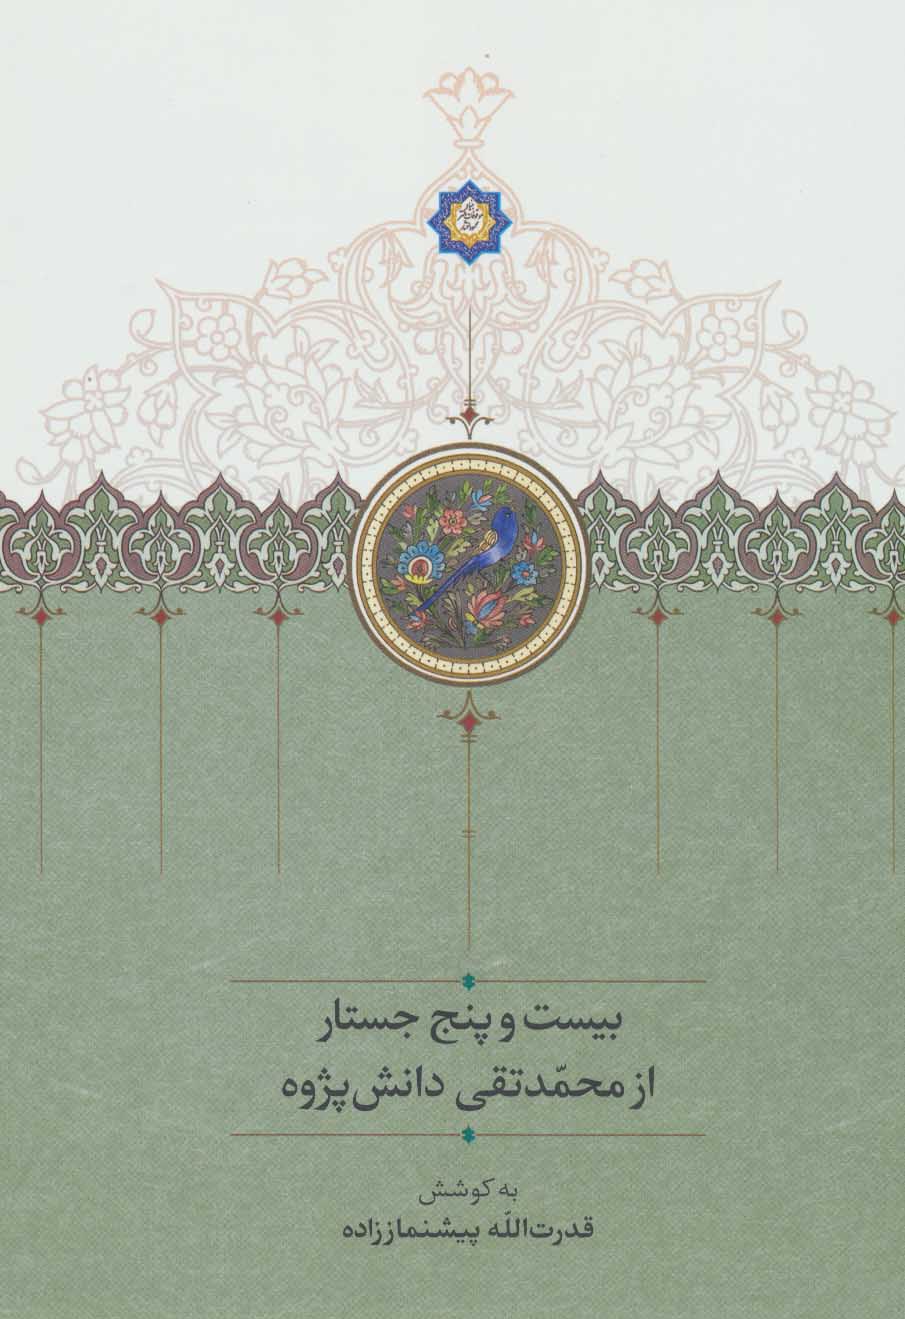  کتاب بیست و پنج جستار از محمدتقی دانش پژوه